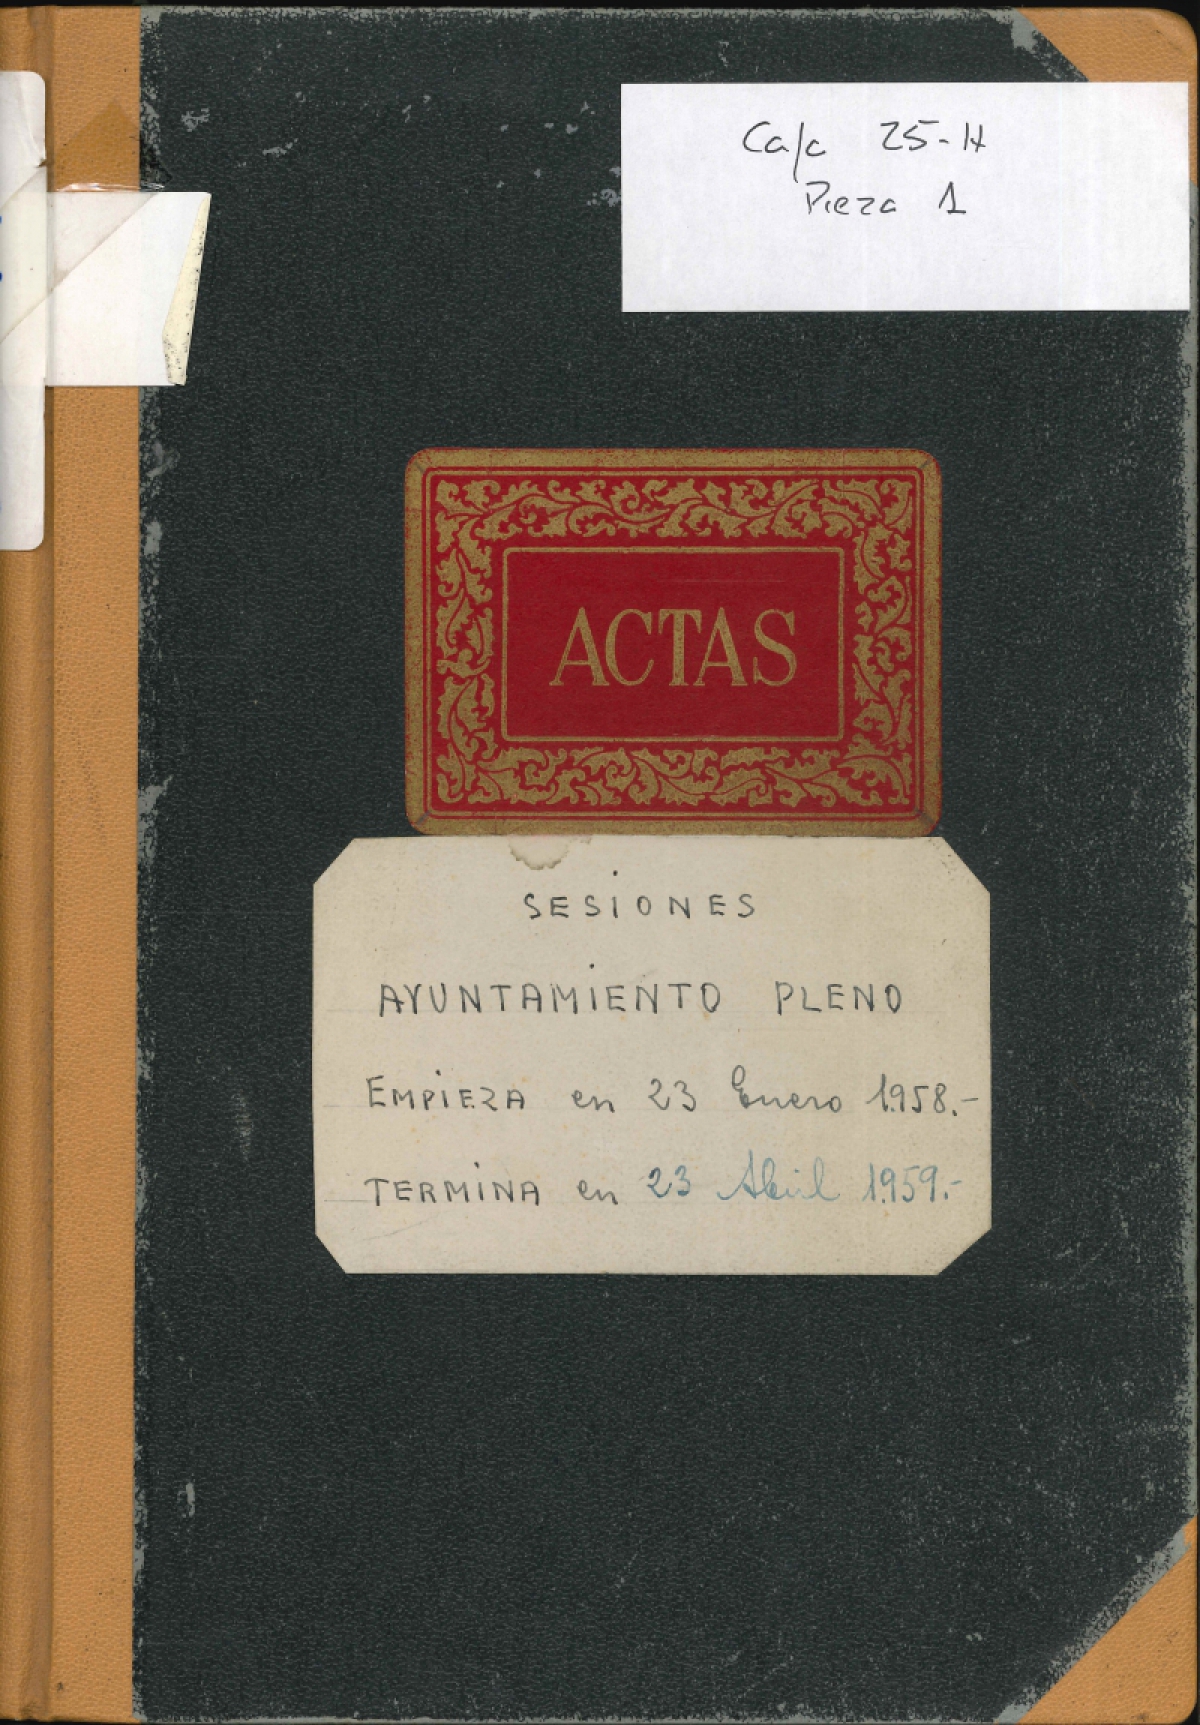 Digitalizados libros de actas de ayuntamiento pleno entre 1954 y 1968.